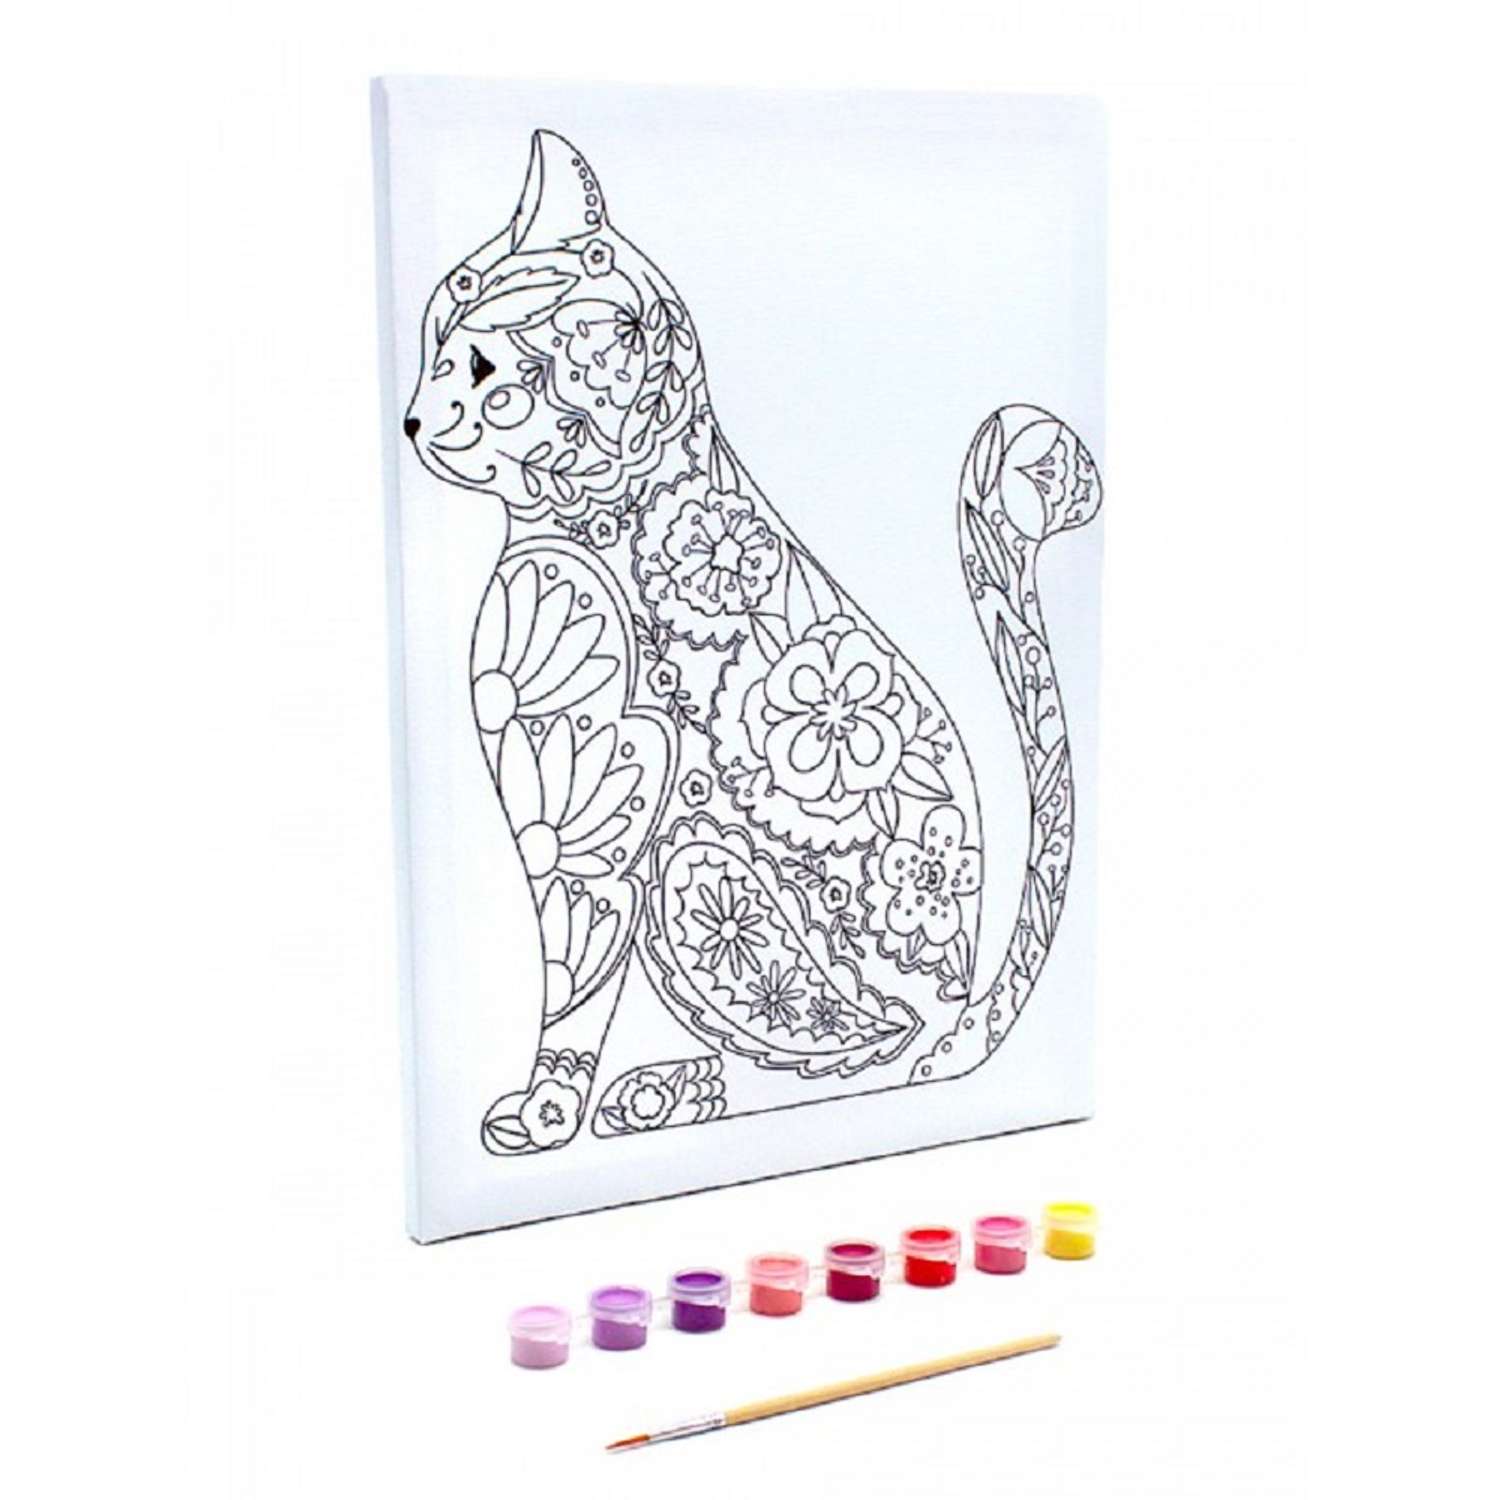 Раскраска на холсте РАЗВИВАШКИ Цветочная кошка - фото 1